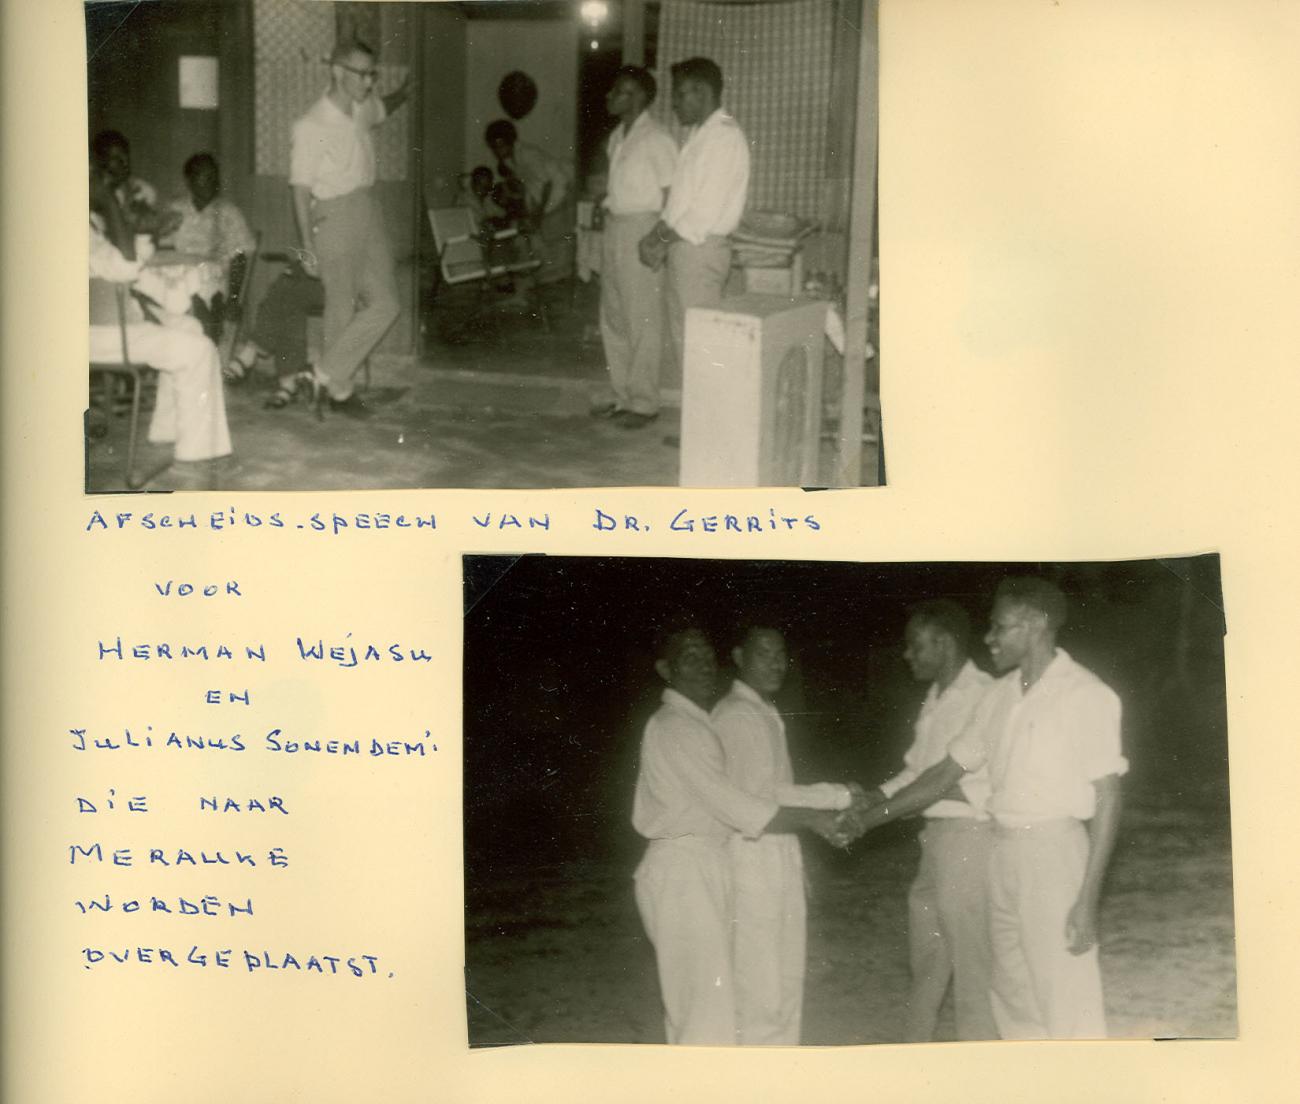 BD/83/91 - 
Afscheidsspeech voor twee Papoea-medewerkers van het ziekenhuis bij hun overplaatsing naar Merauke
